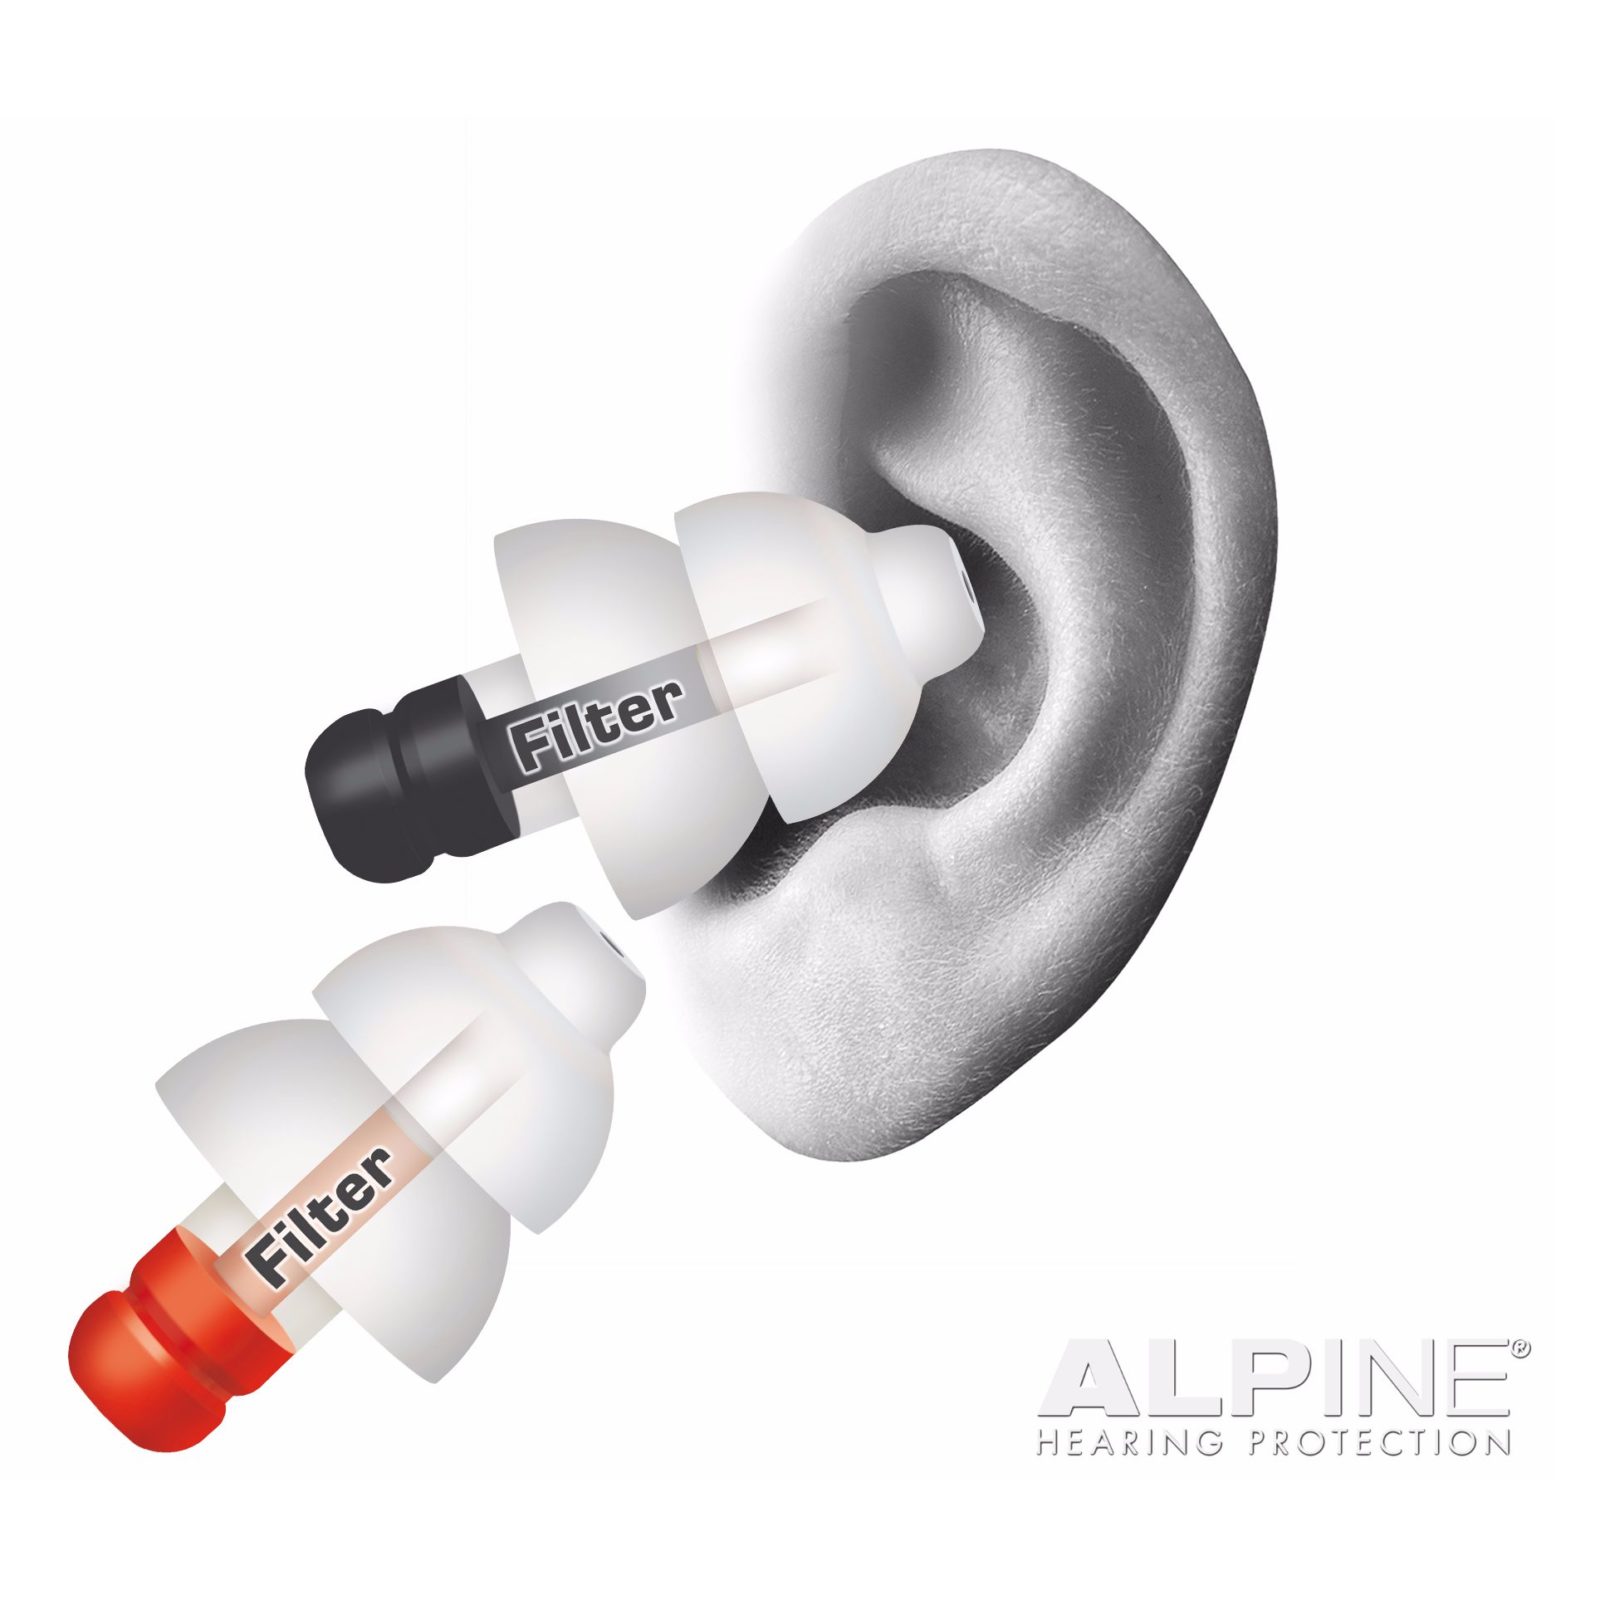 Les  protections auditives Alpine, indispensables pour vos tympans!